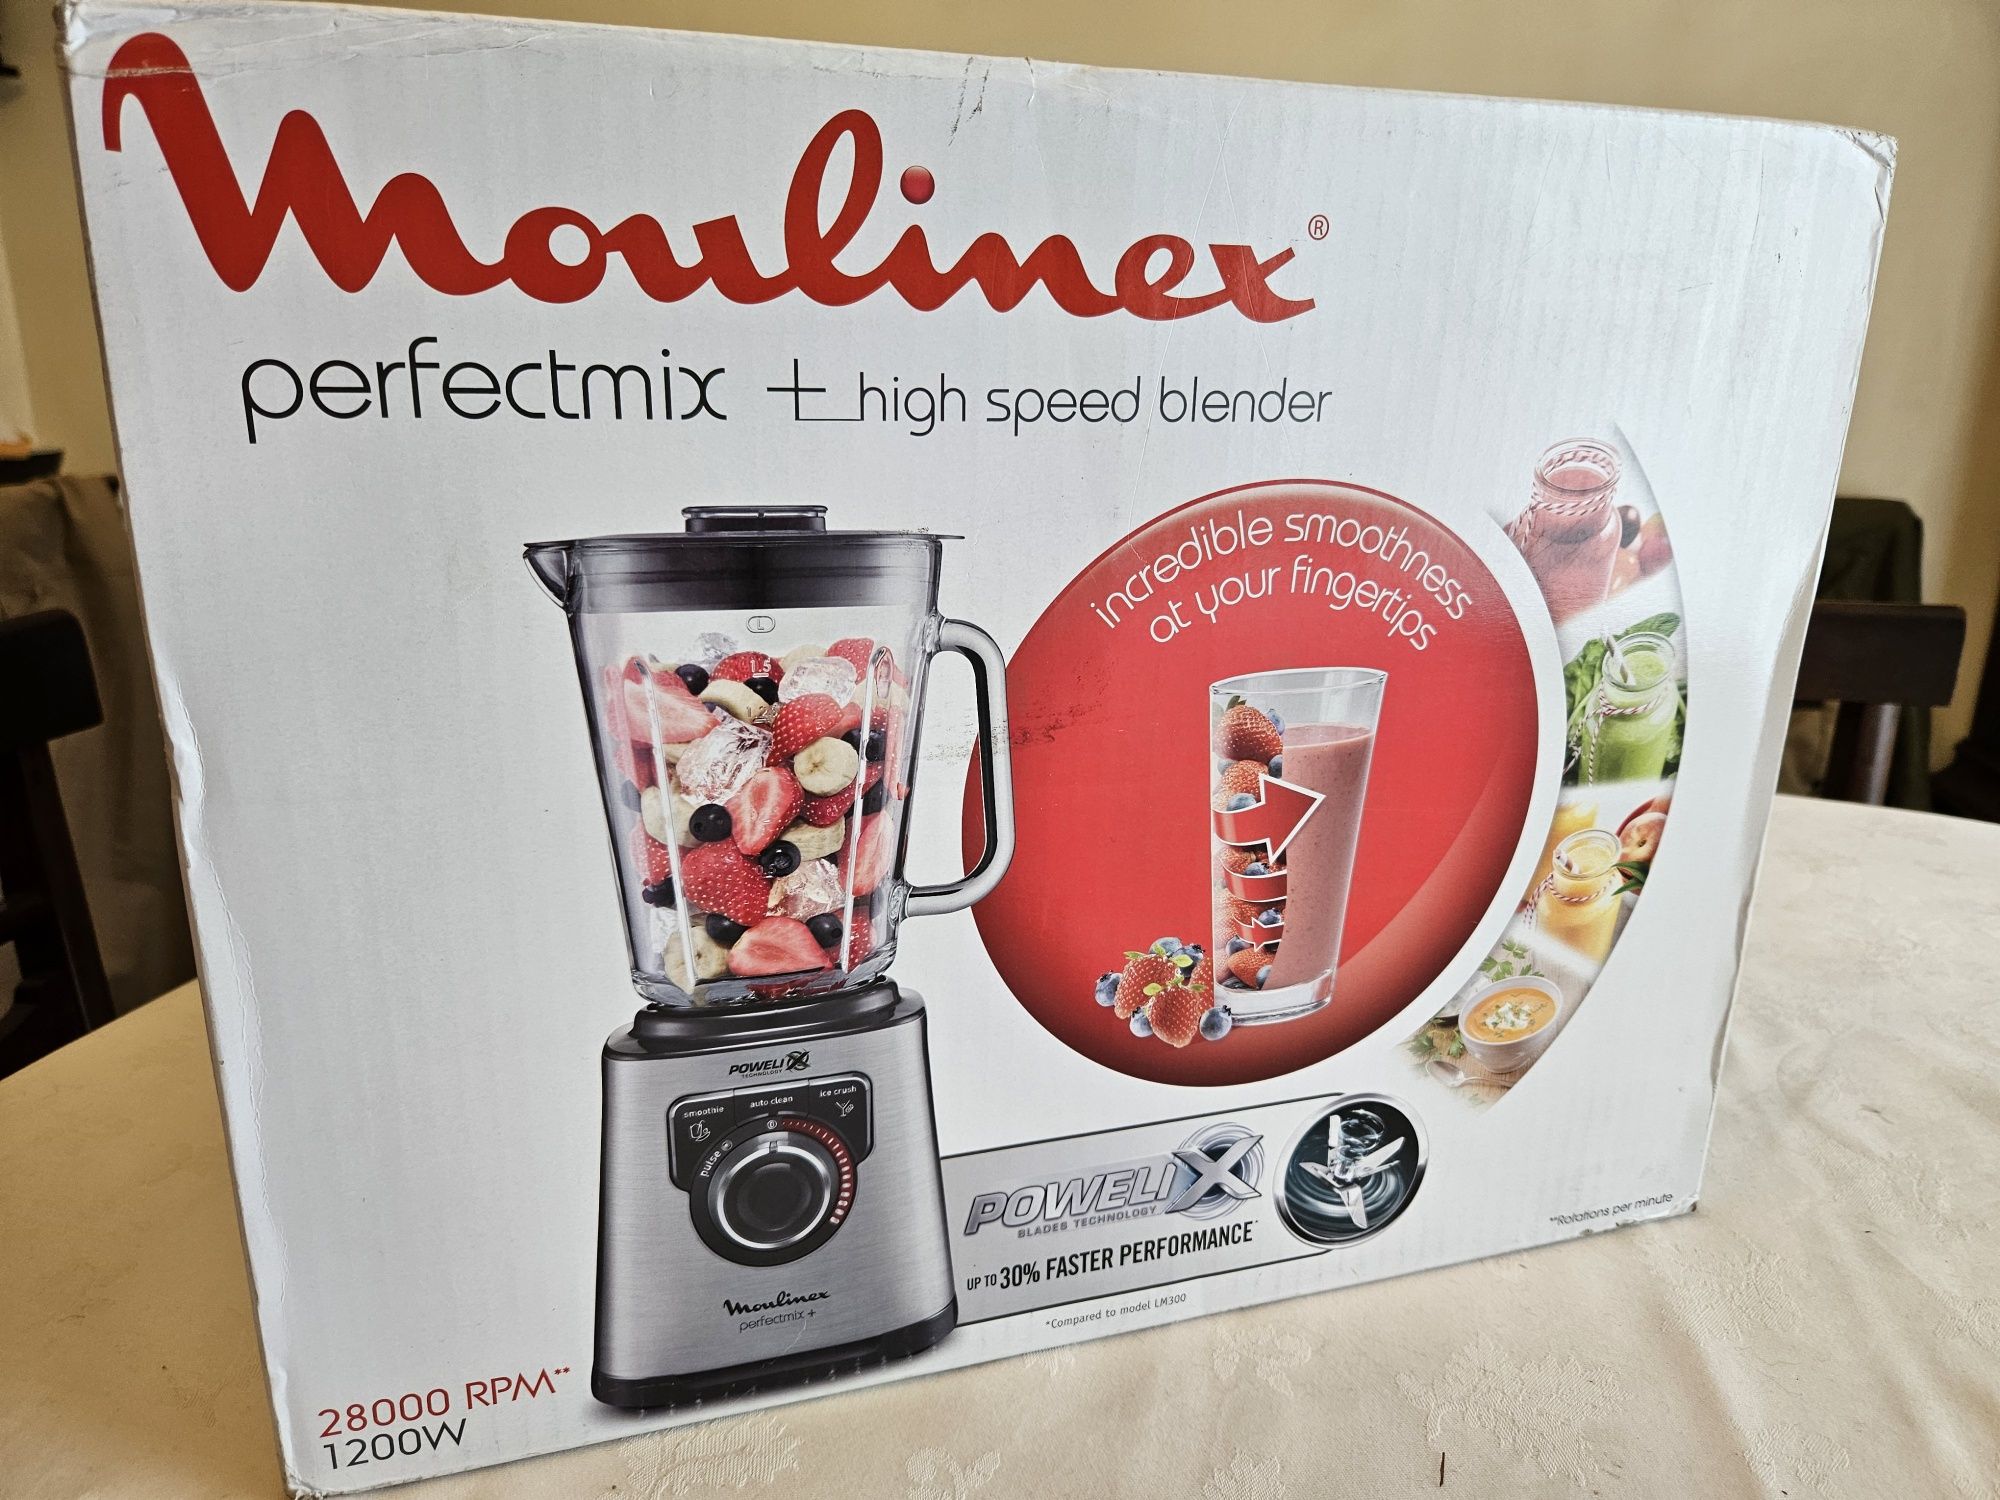 Liquidificador Moulinex Perfect mix+